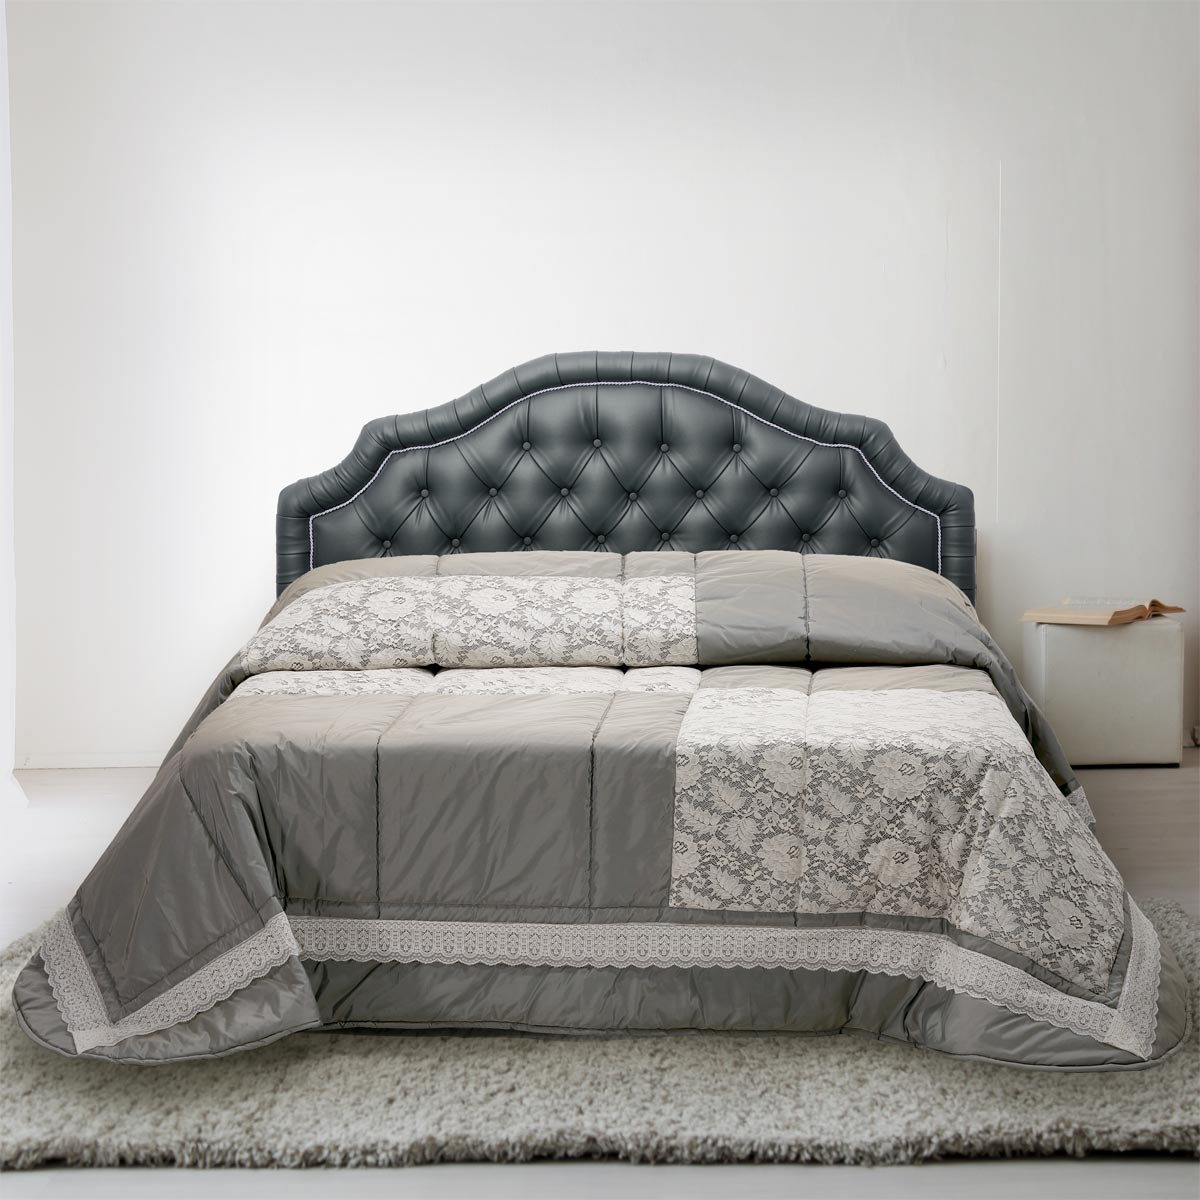 Trapunta per il corredo letto sposa dallo stile contemporaneo di colore grigio - EL117